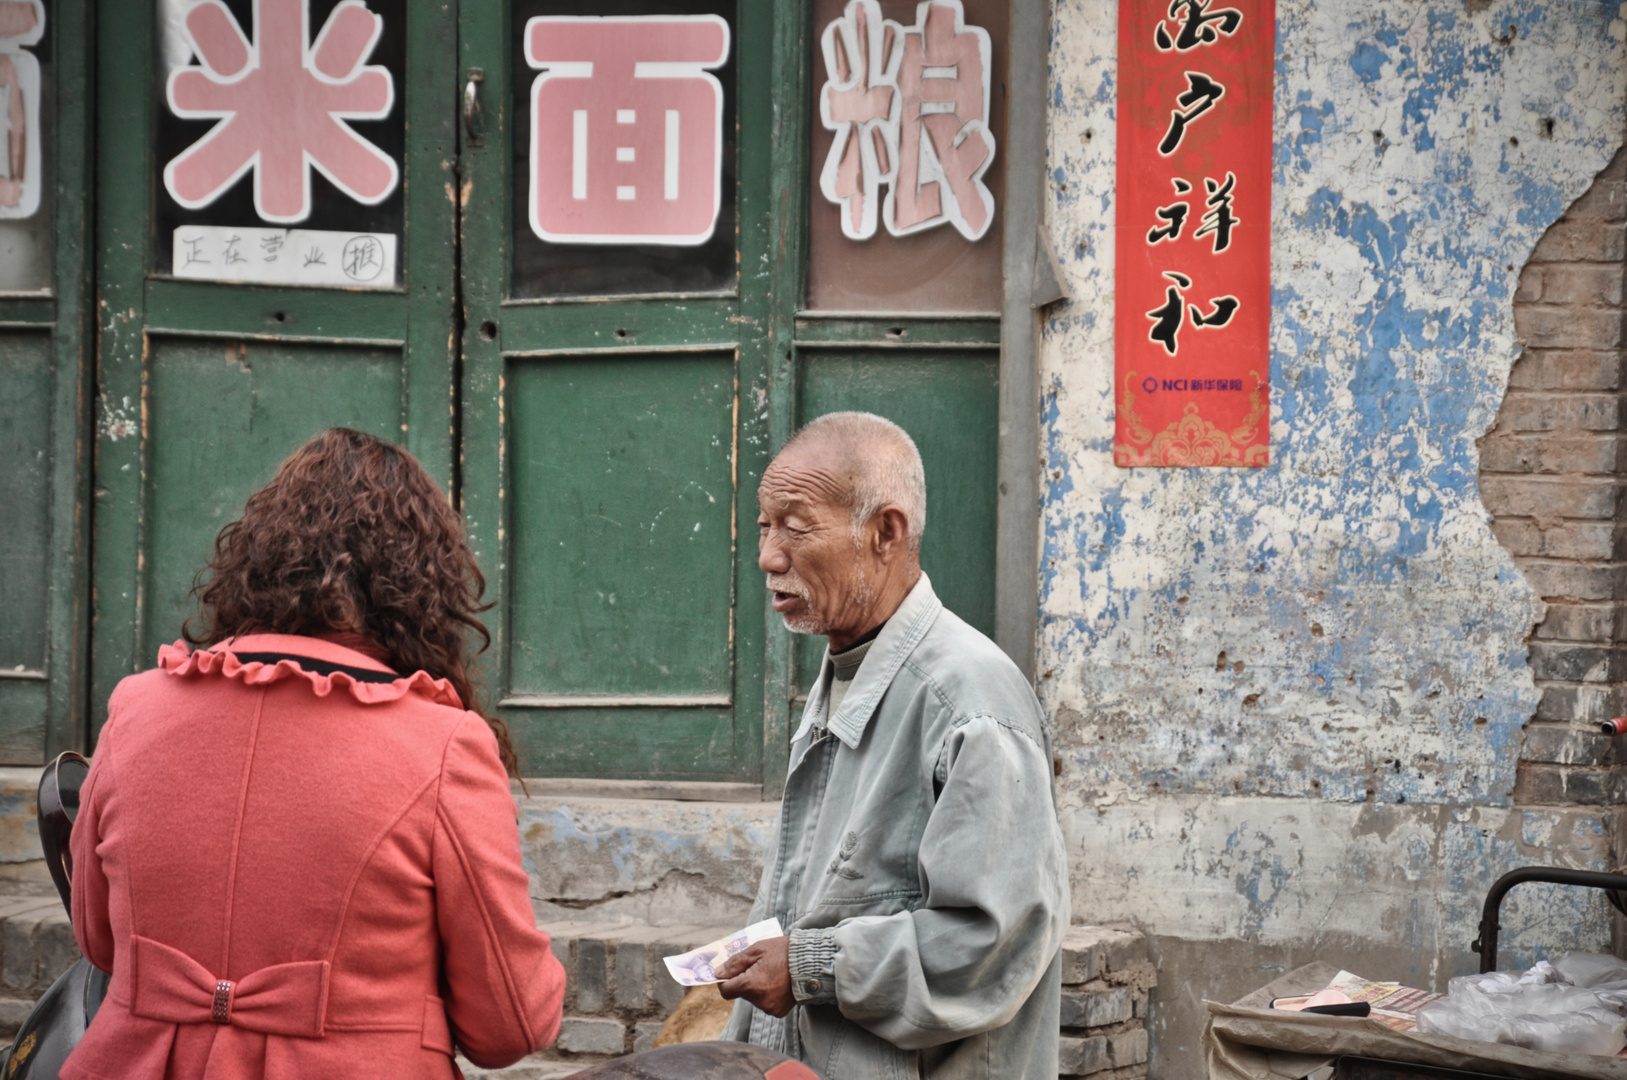 Tauschgeschäft vor dem Nudelgeschäft - China Shanxi Pingyao